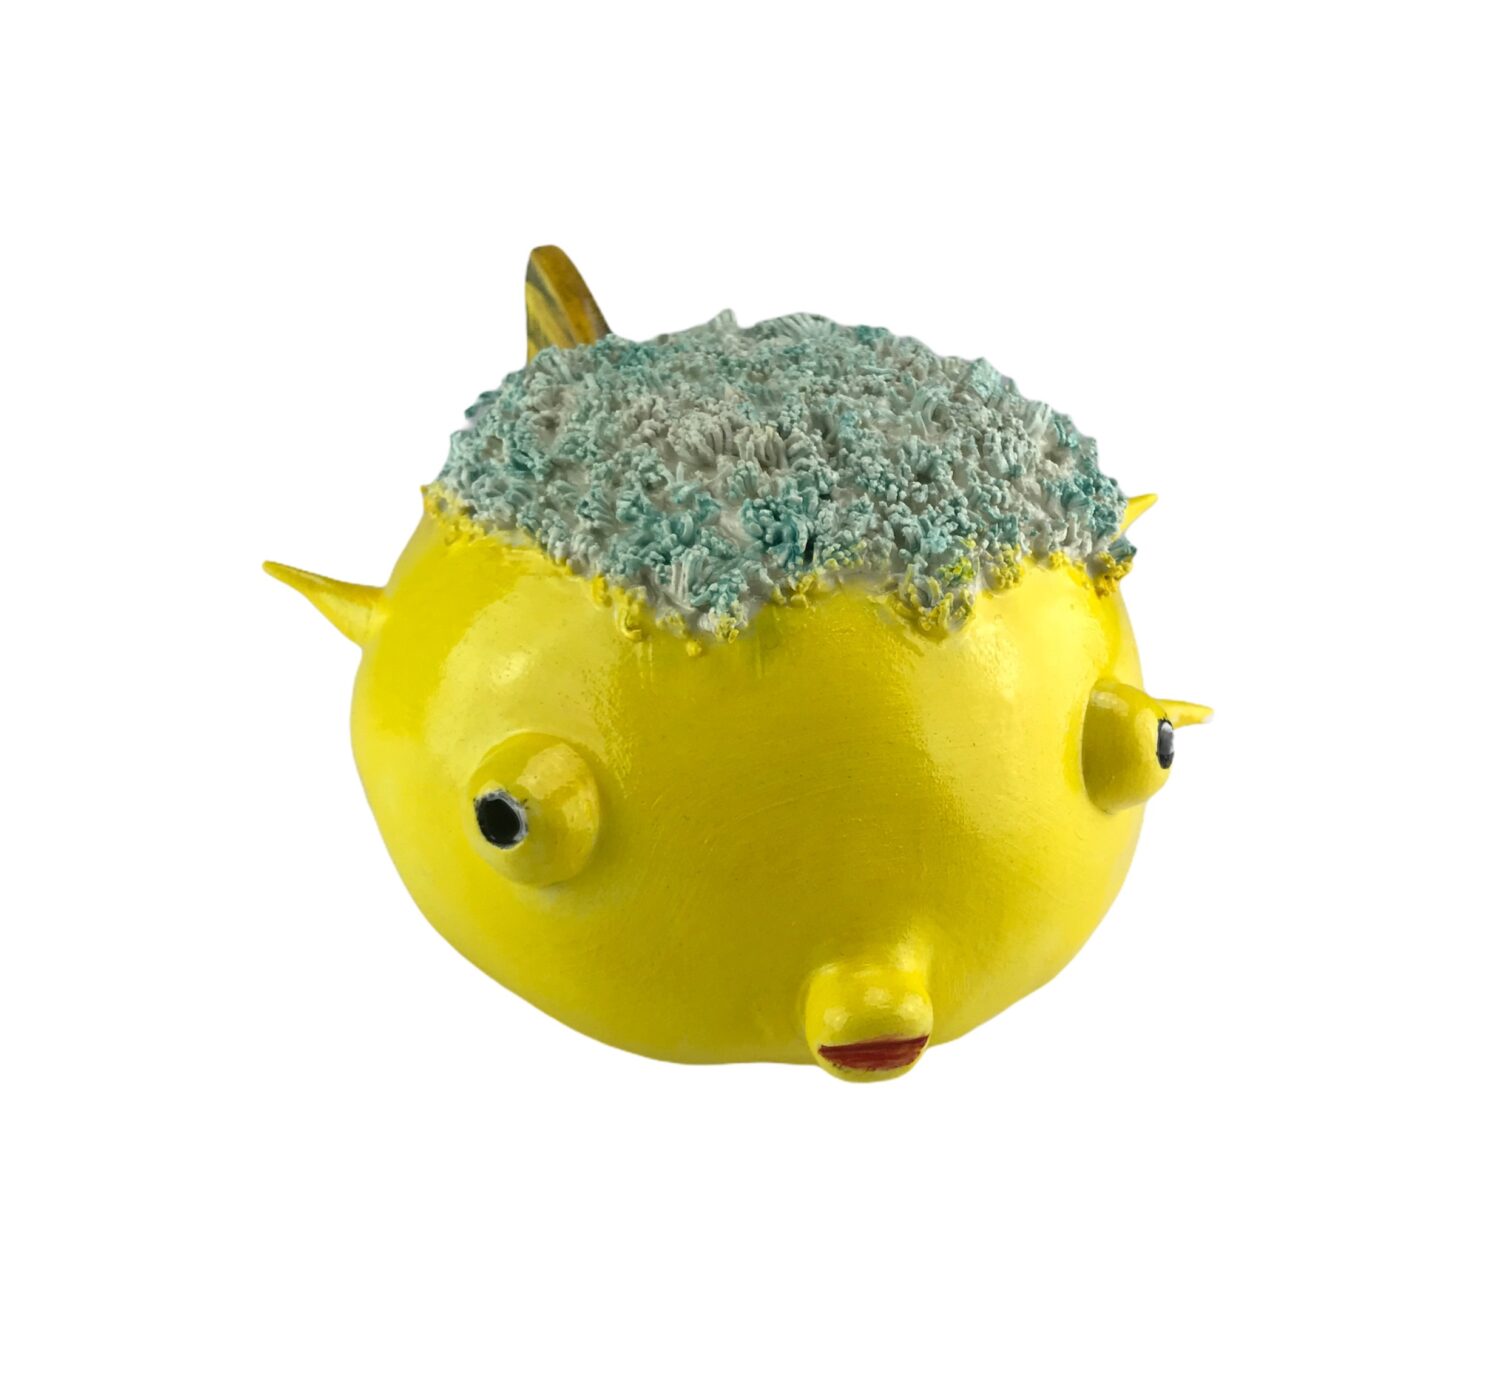 Ceramic “bubble” fish